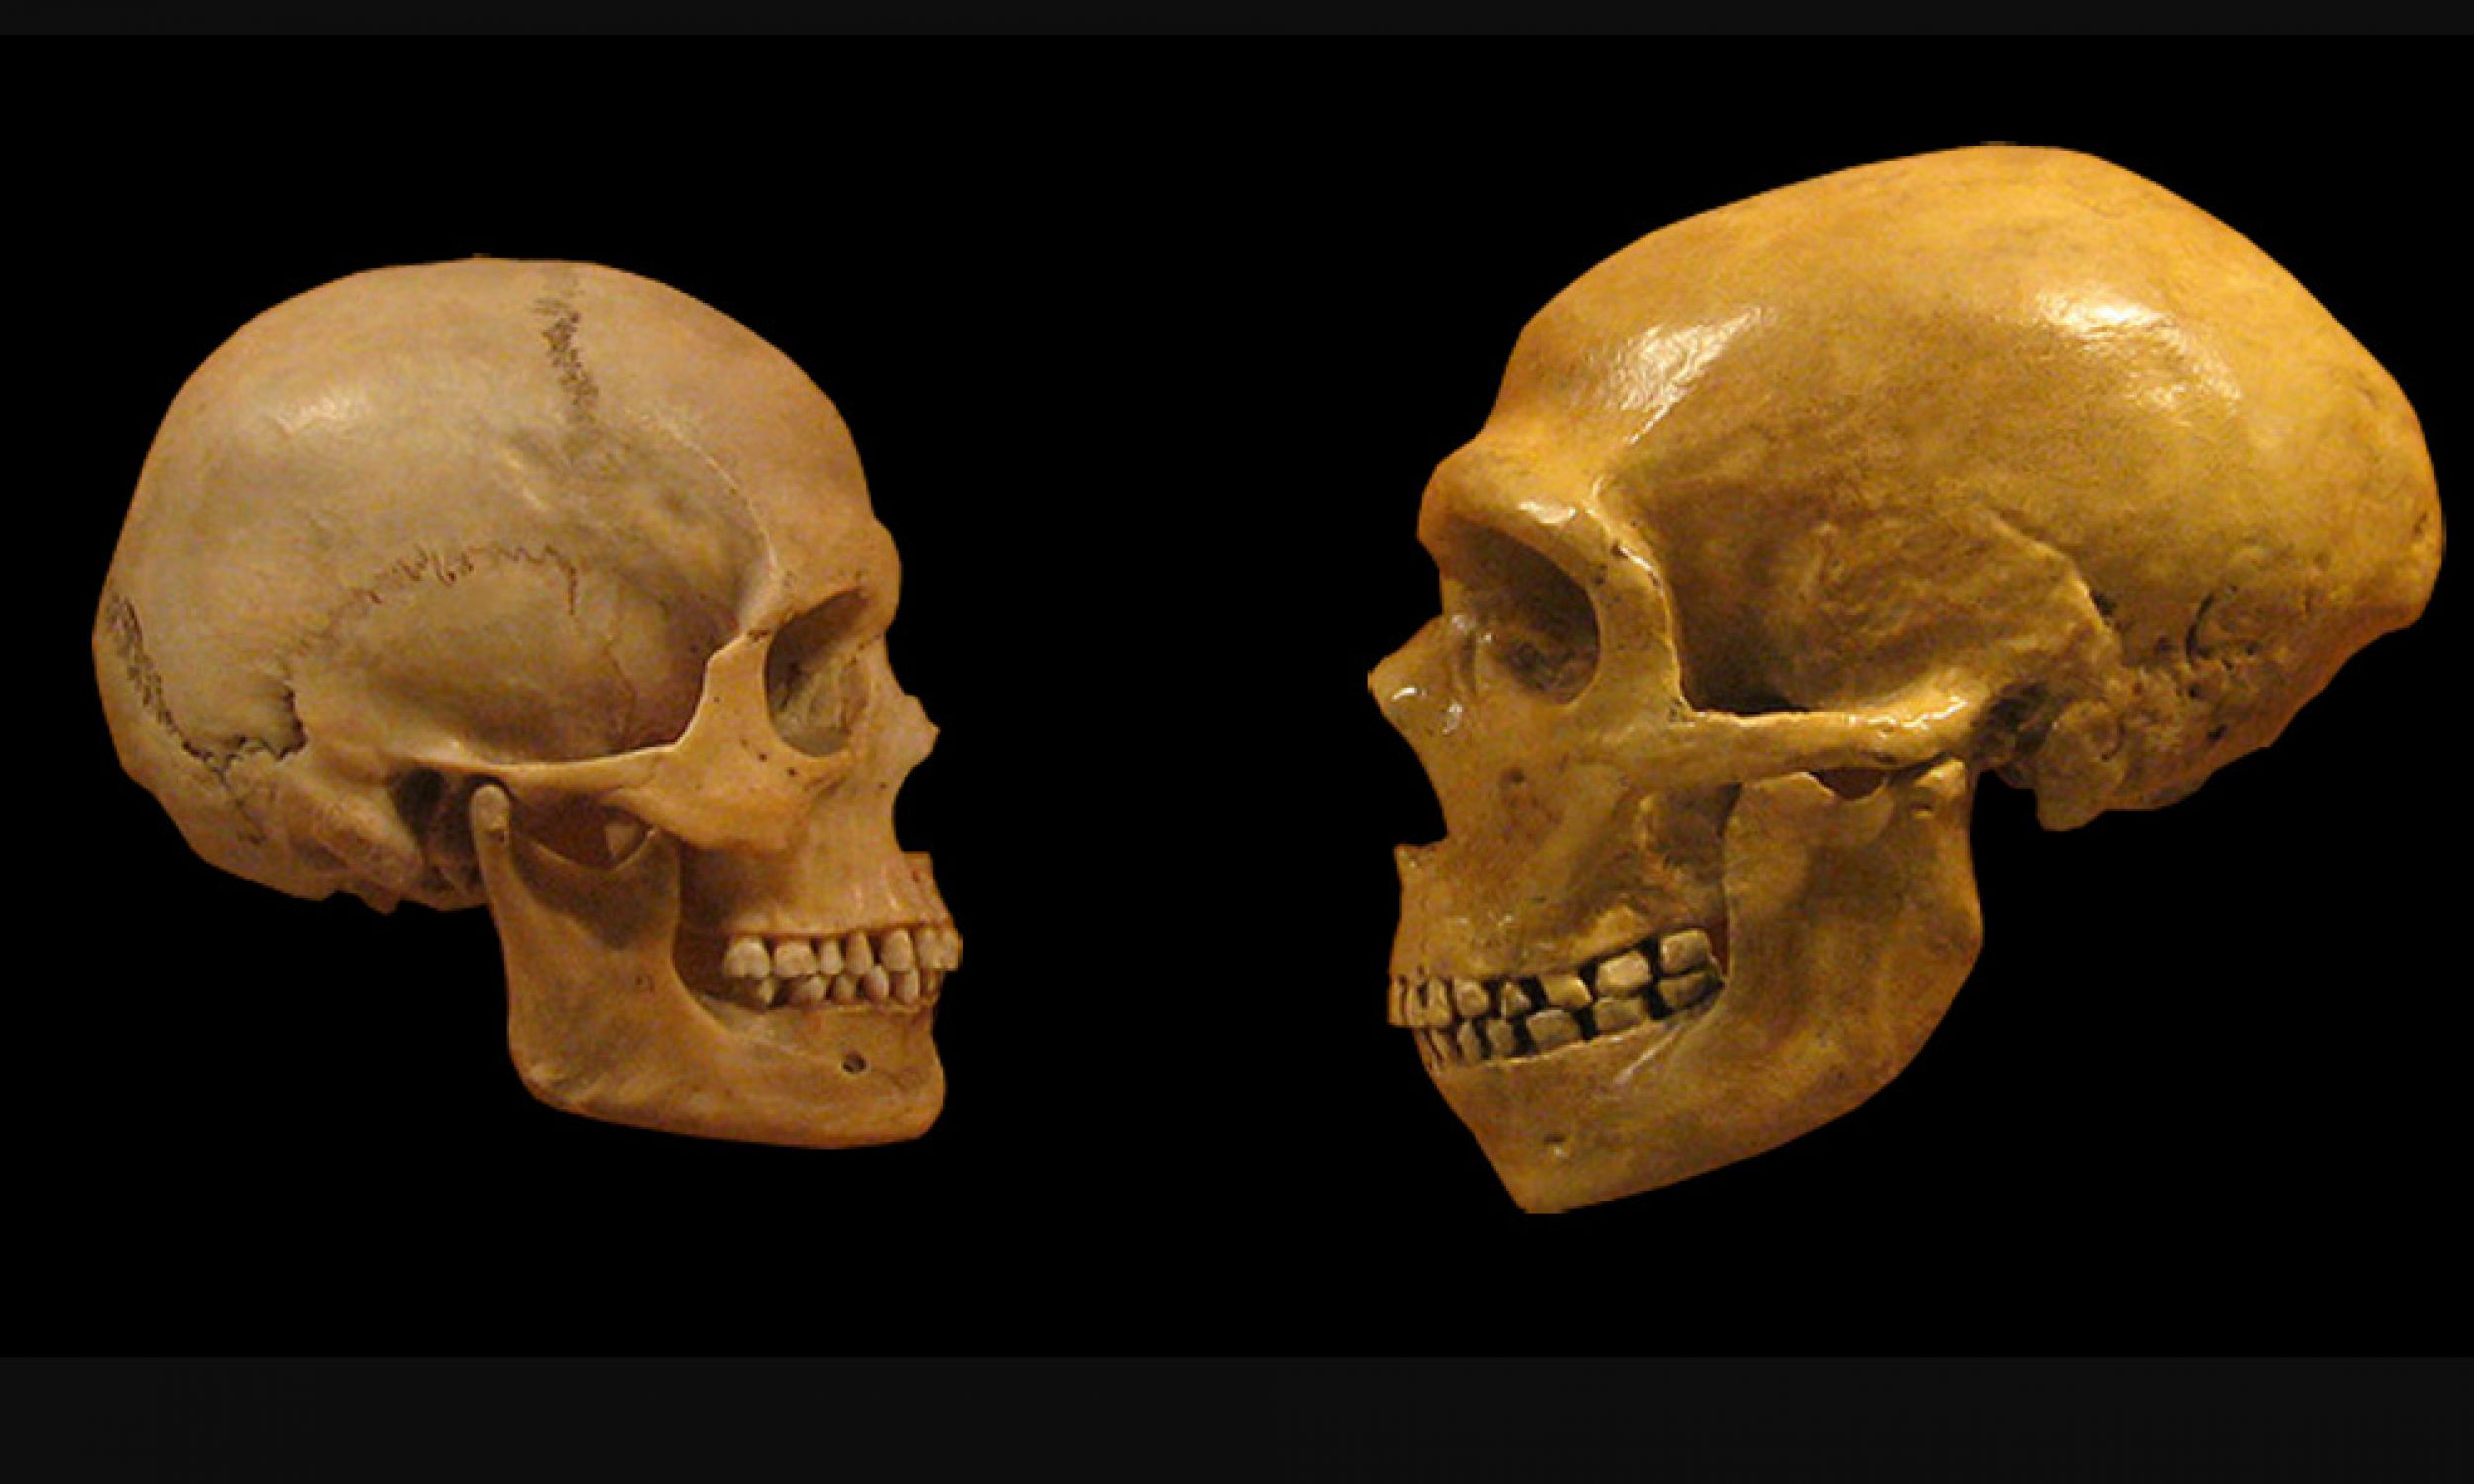 Porównanie czaszek współczesnego człowieka (z lewej) i neandertalczyka, Muzeum Historii Naturalnej w Cleveland, listopad 2008 r. Fot. Wikimedia/Hairymuseummatt (praca oryginalna), DrMikeBaxter (pochodna – czaszki umieszczone na czarnym tle i z usuniętymi adnotacjami) - CC BY-SA 2.0